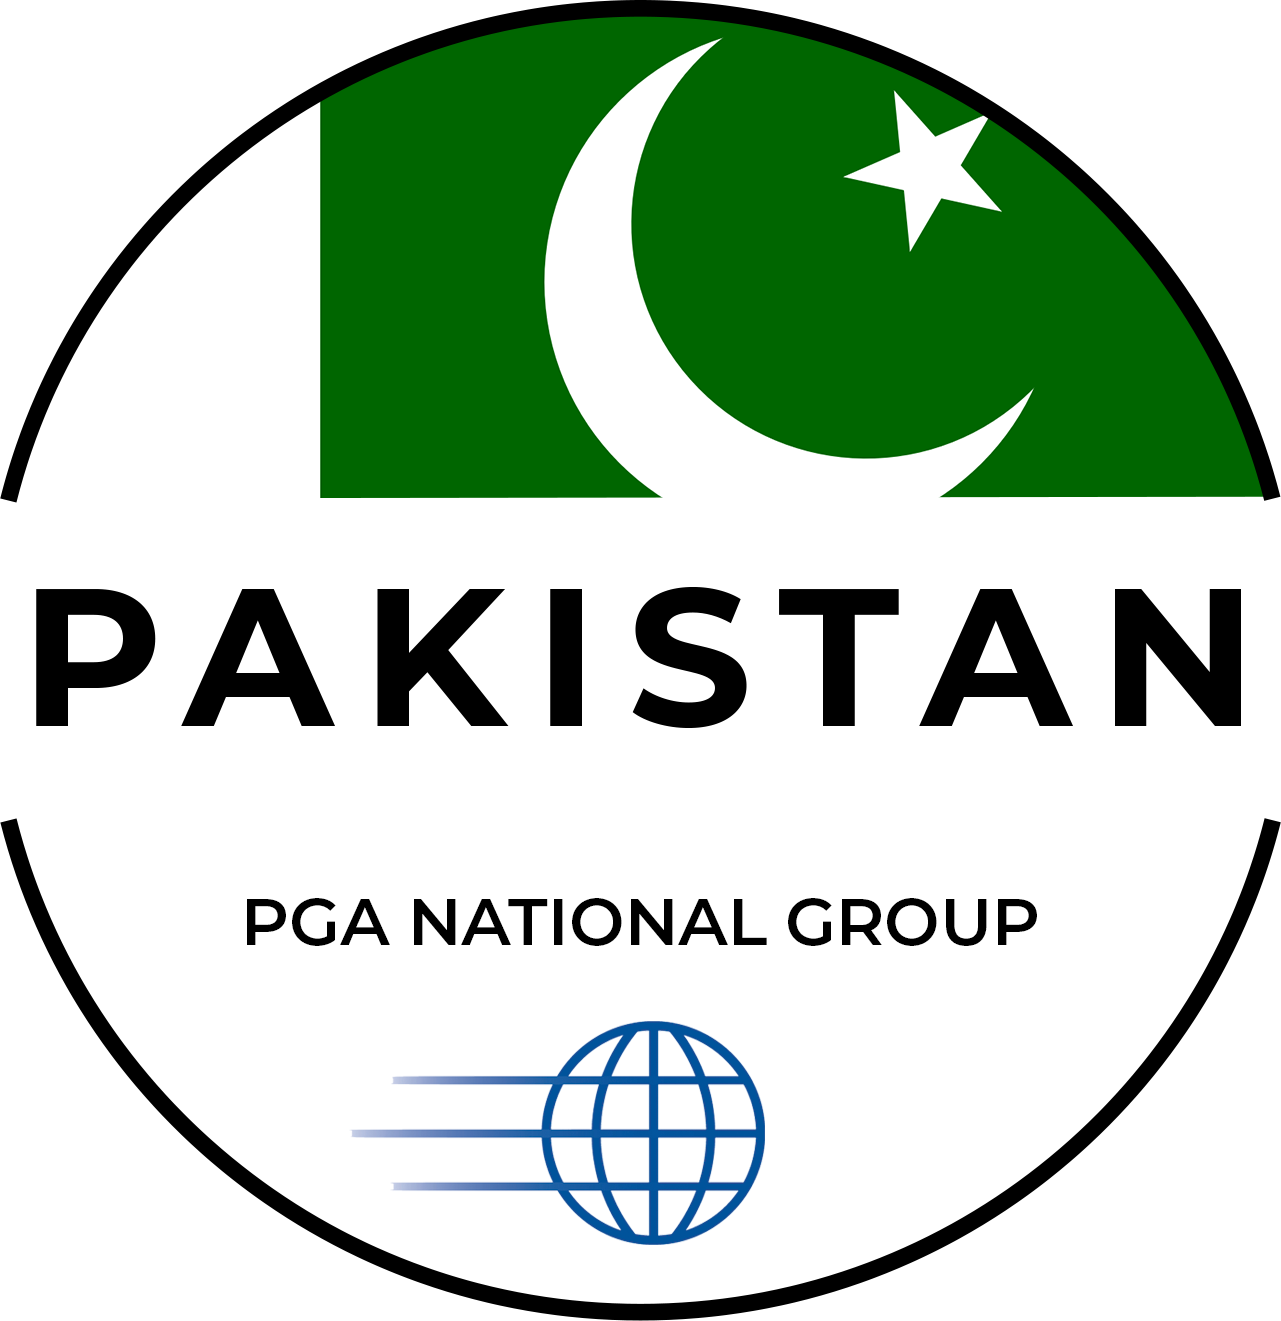 Pakistan PGA National Group